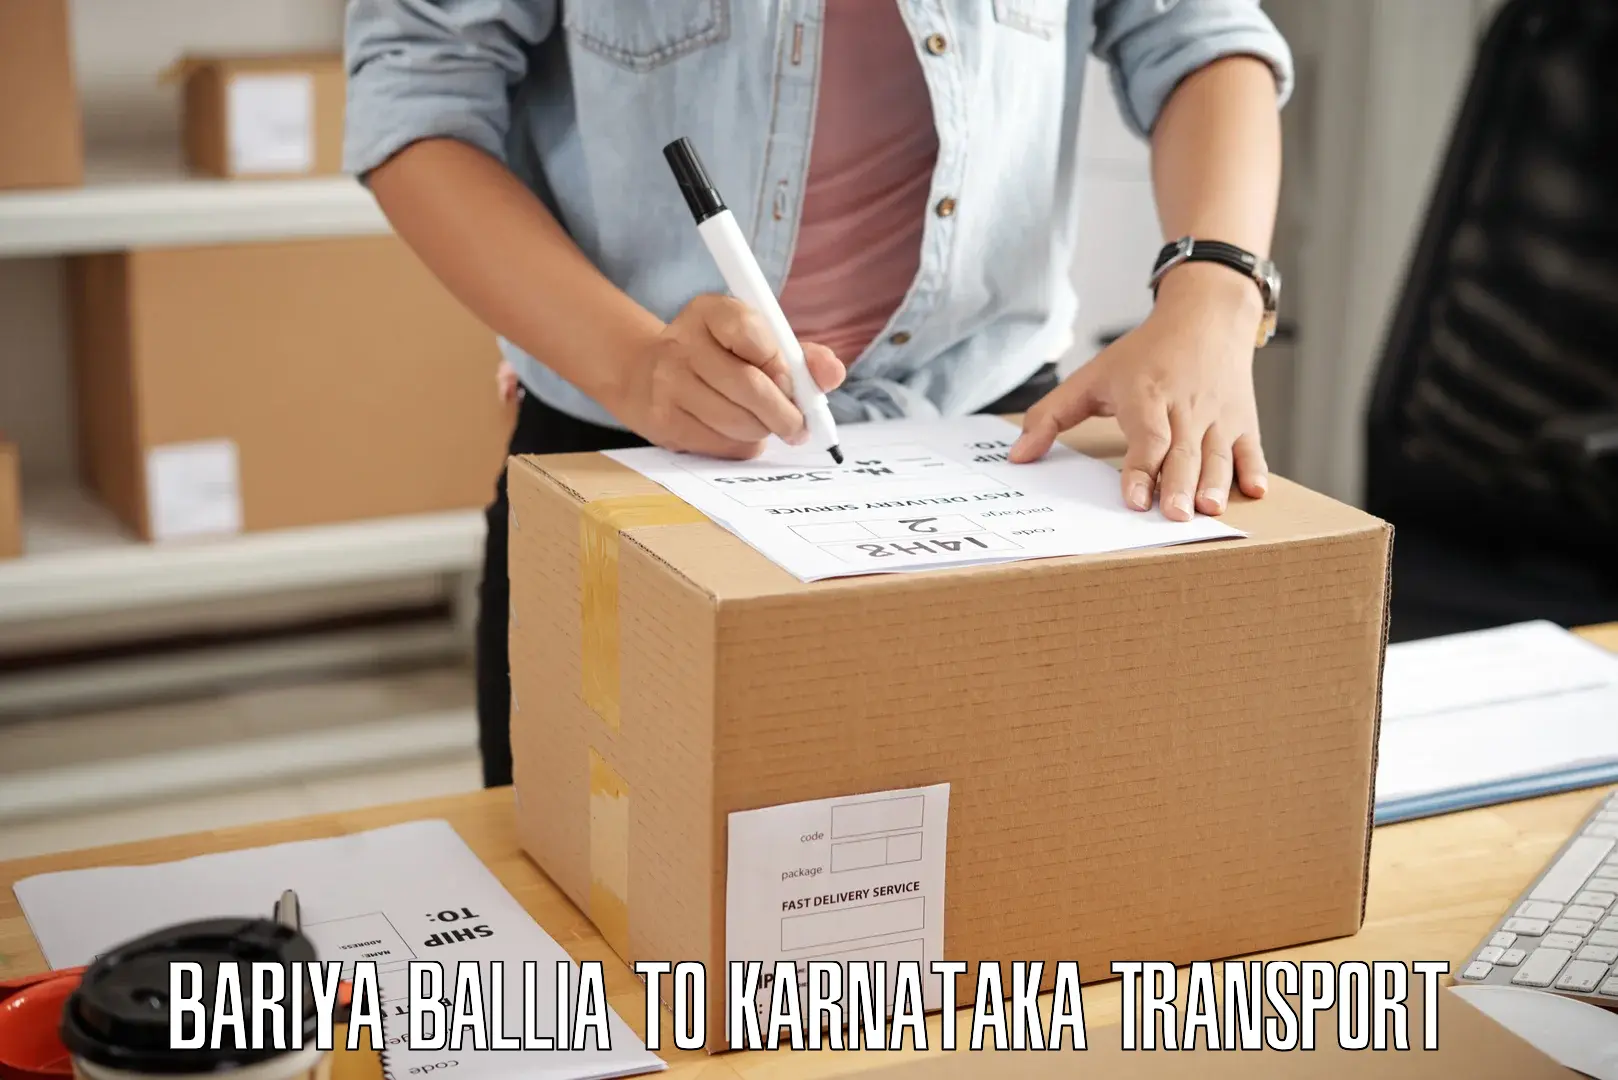 Two wheeler parcel service Bariya Ballia to Karnataka